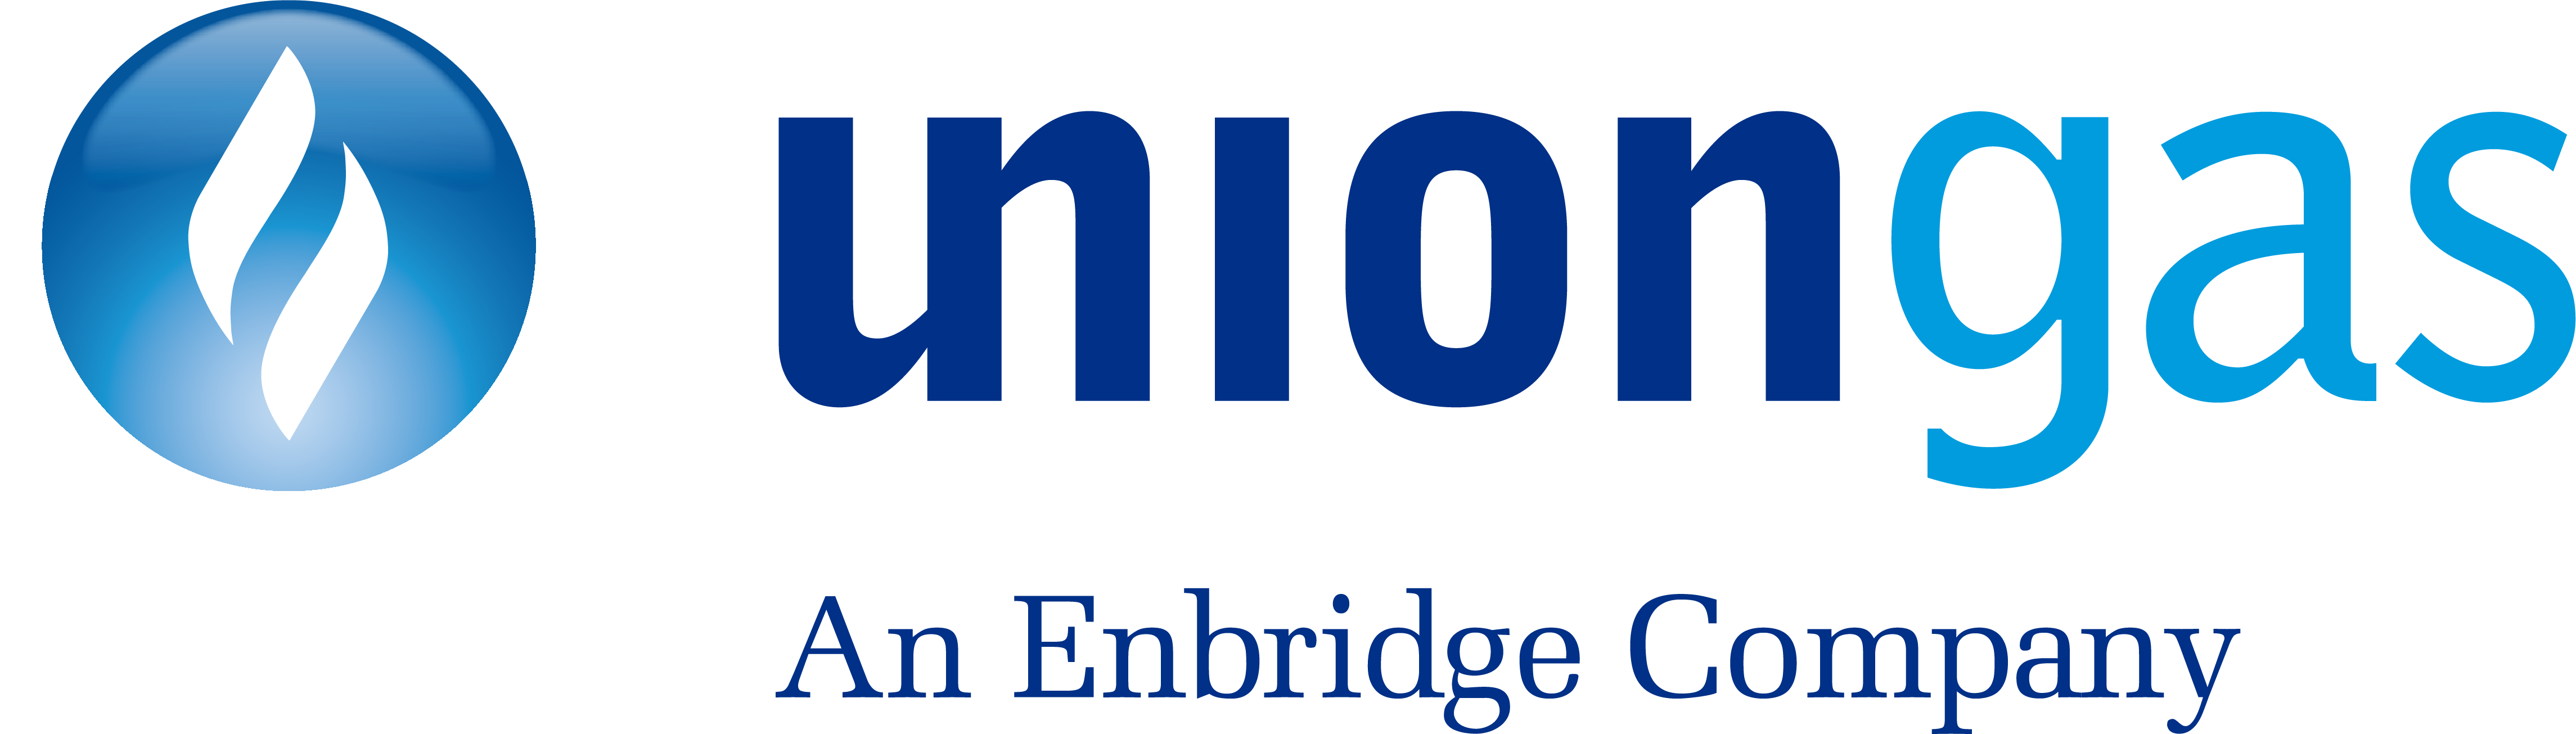 CIET News Union Gas logo, large colour